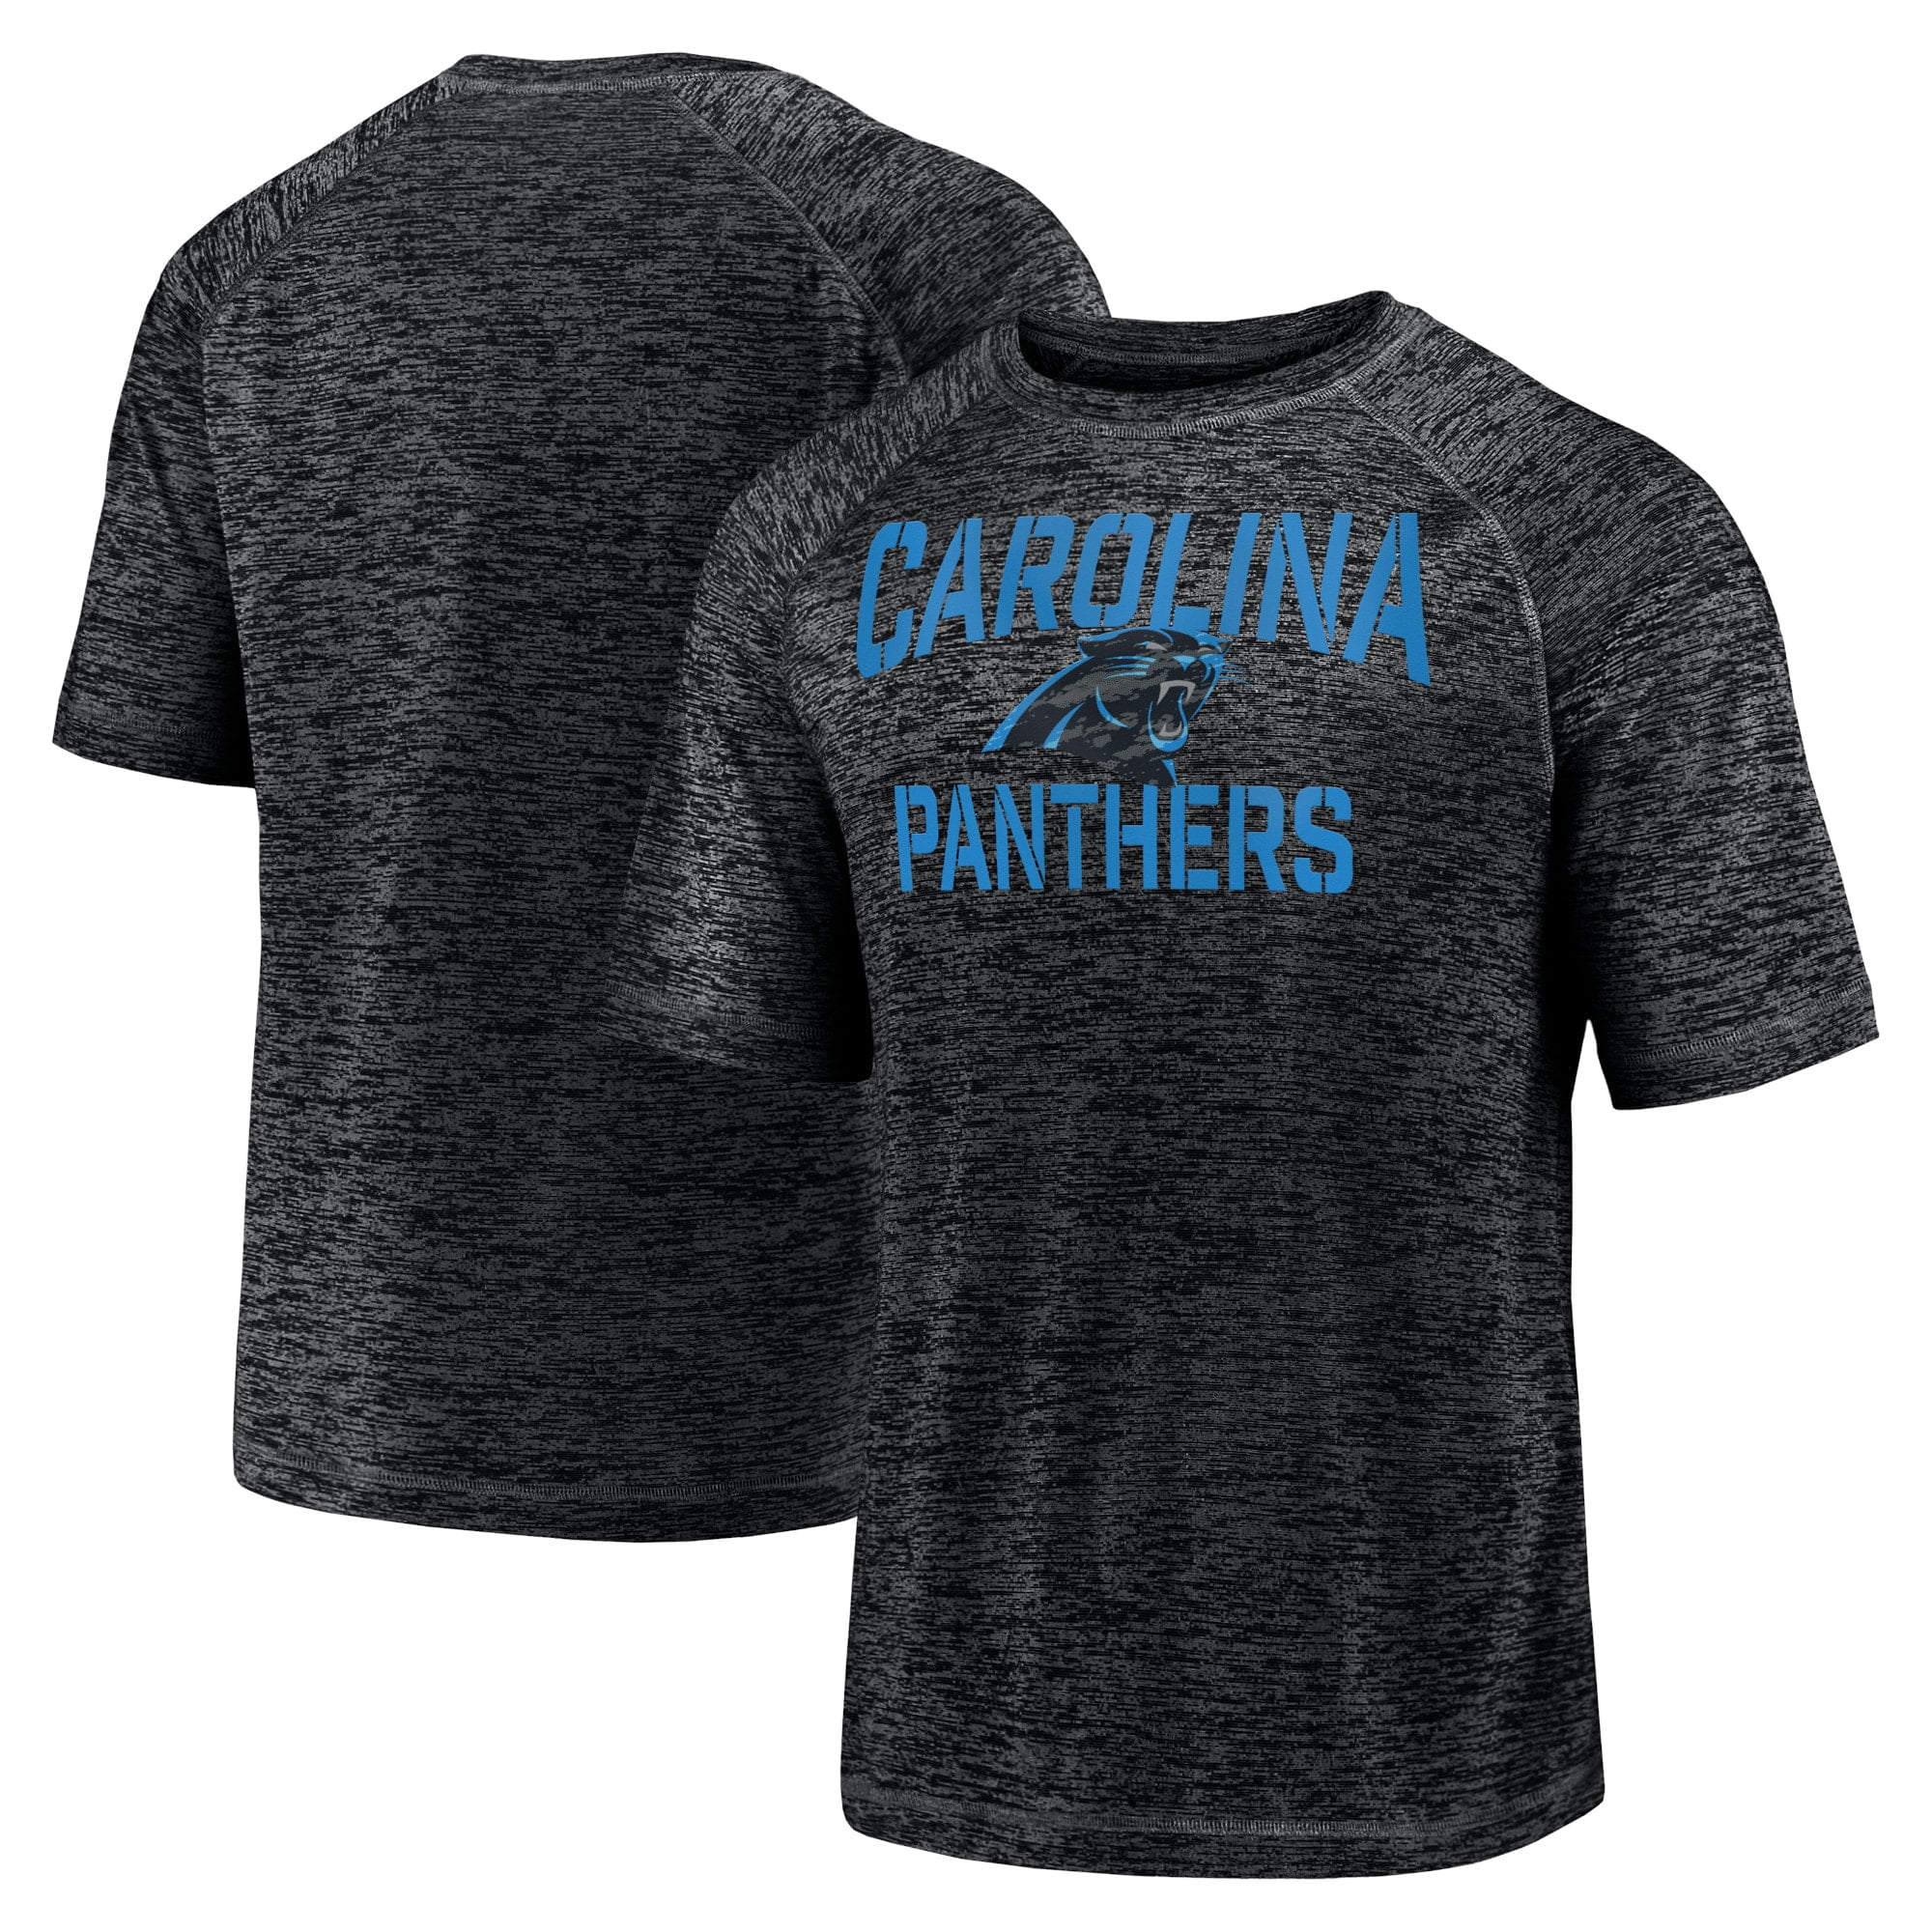 south carolina panthers shirt